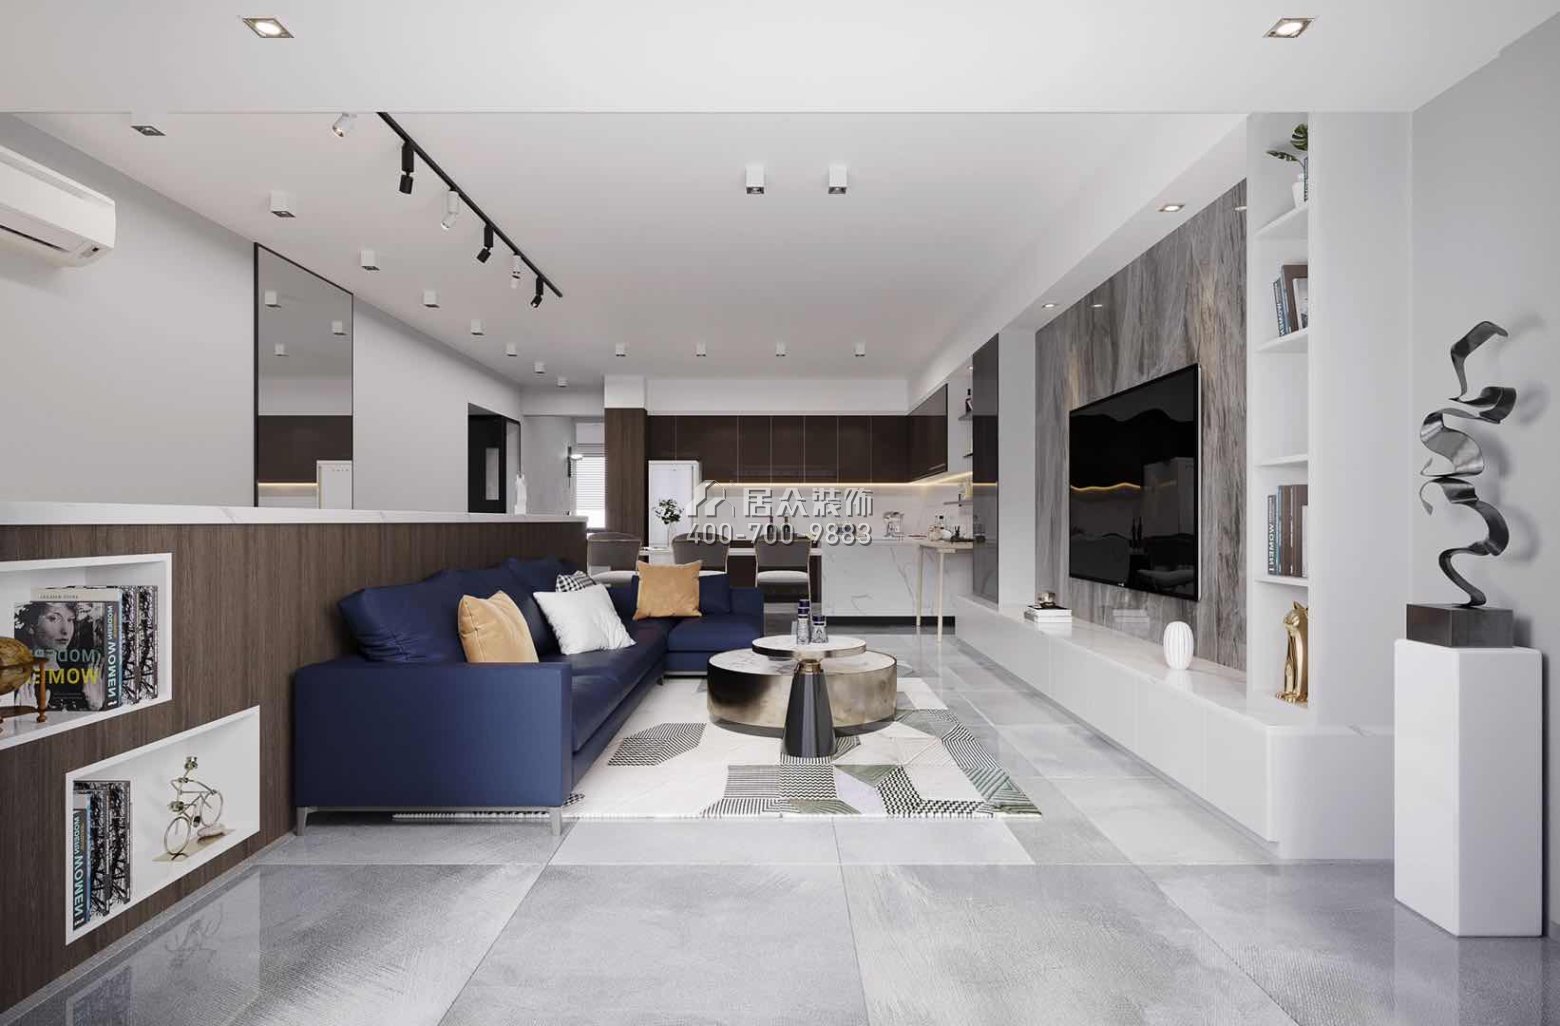 綠景紅樹灣壹號180平方米現代簡約風格平層戶型客廳裝修效果圖